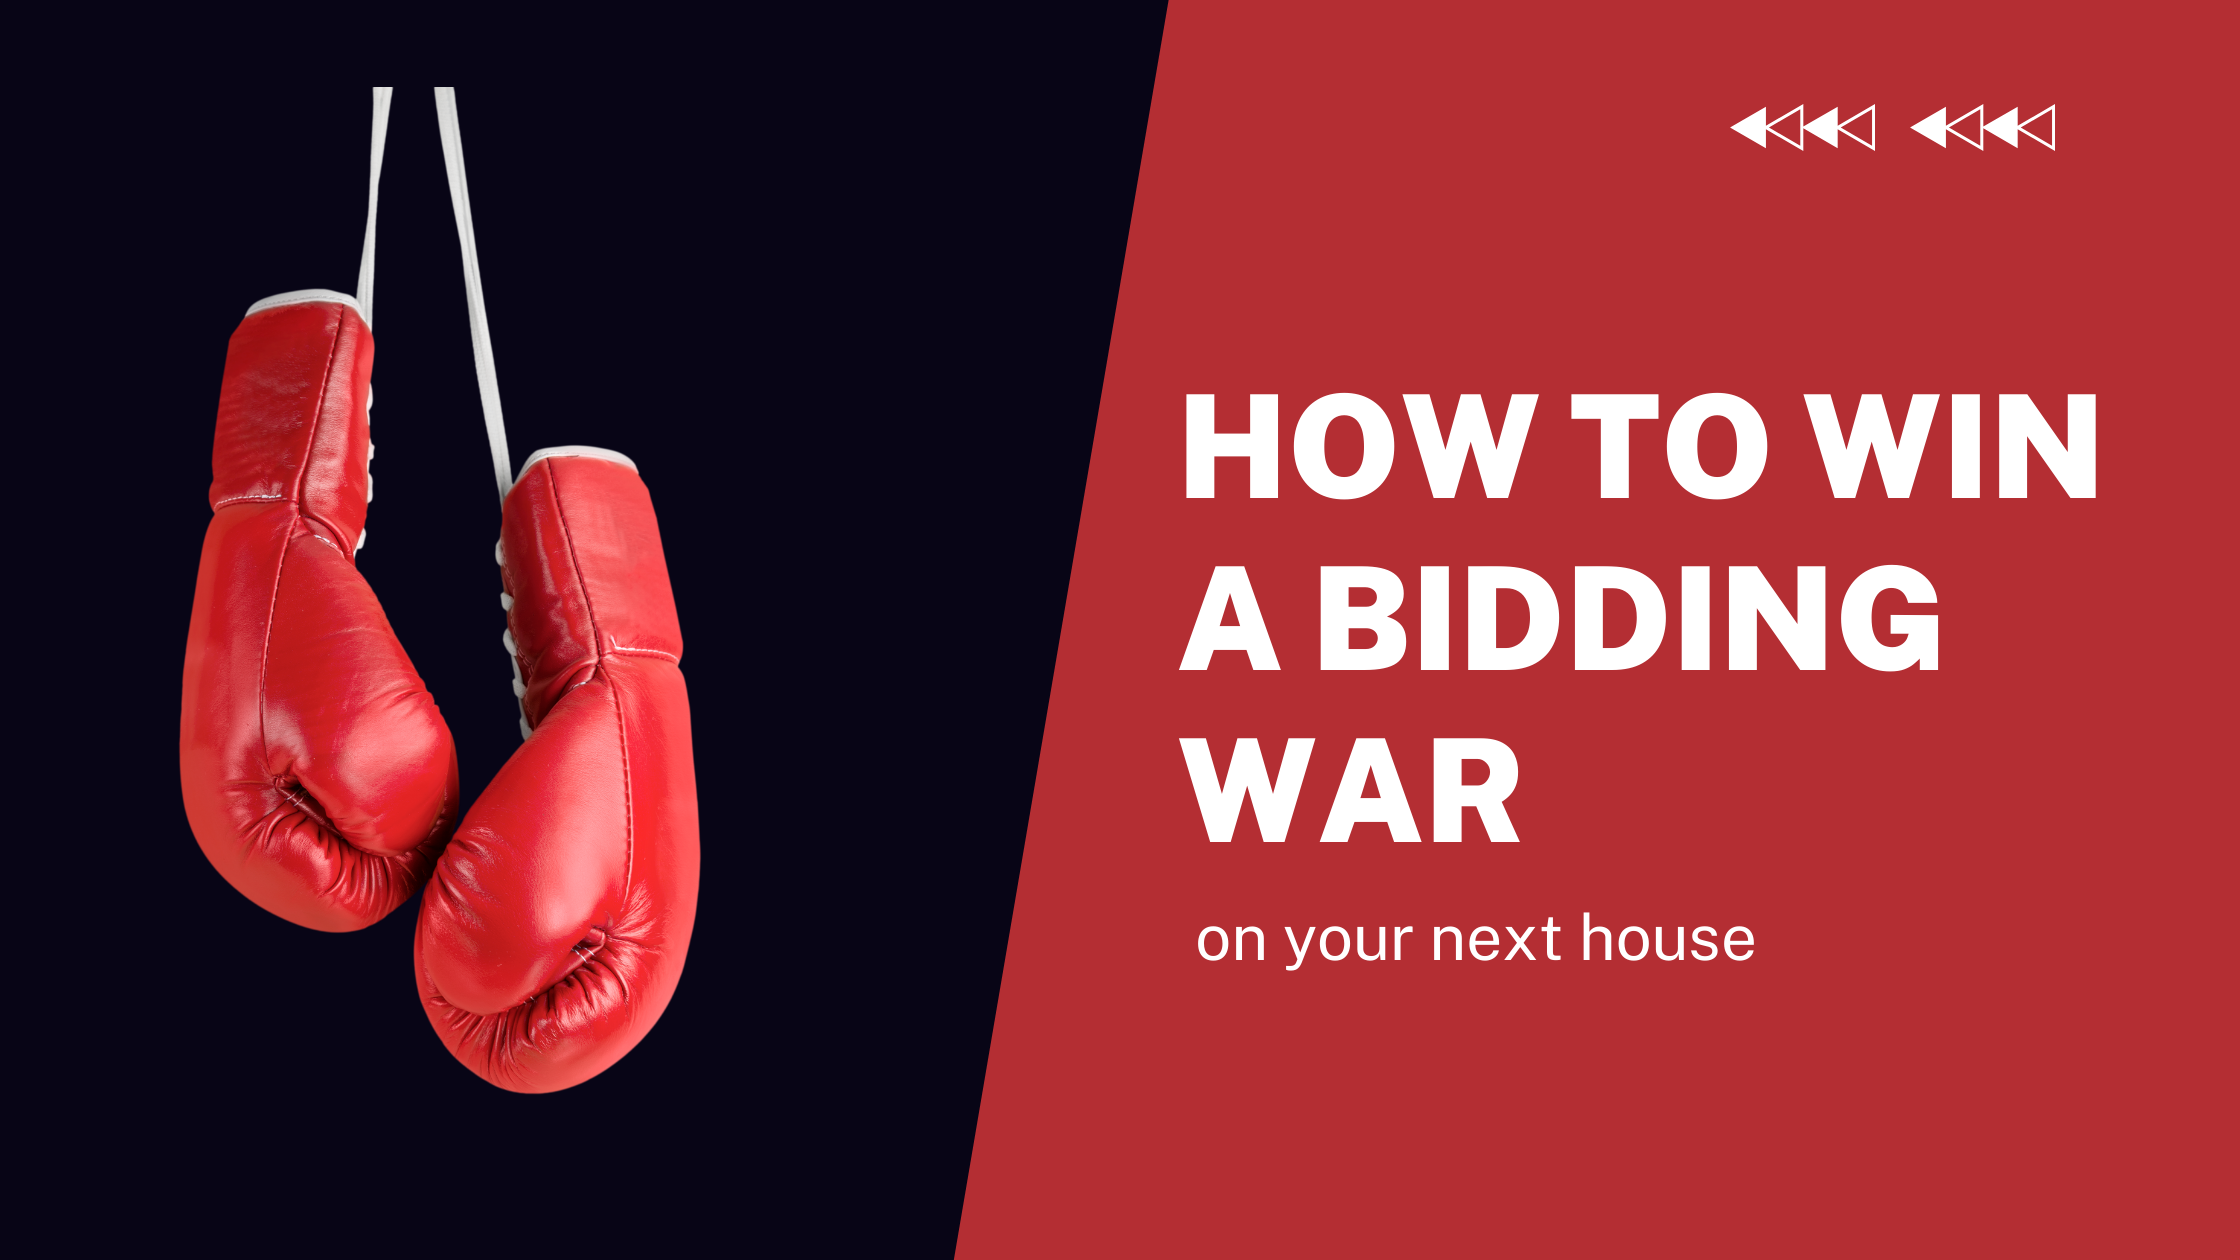 How to win a bidding war